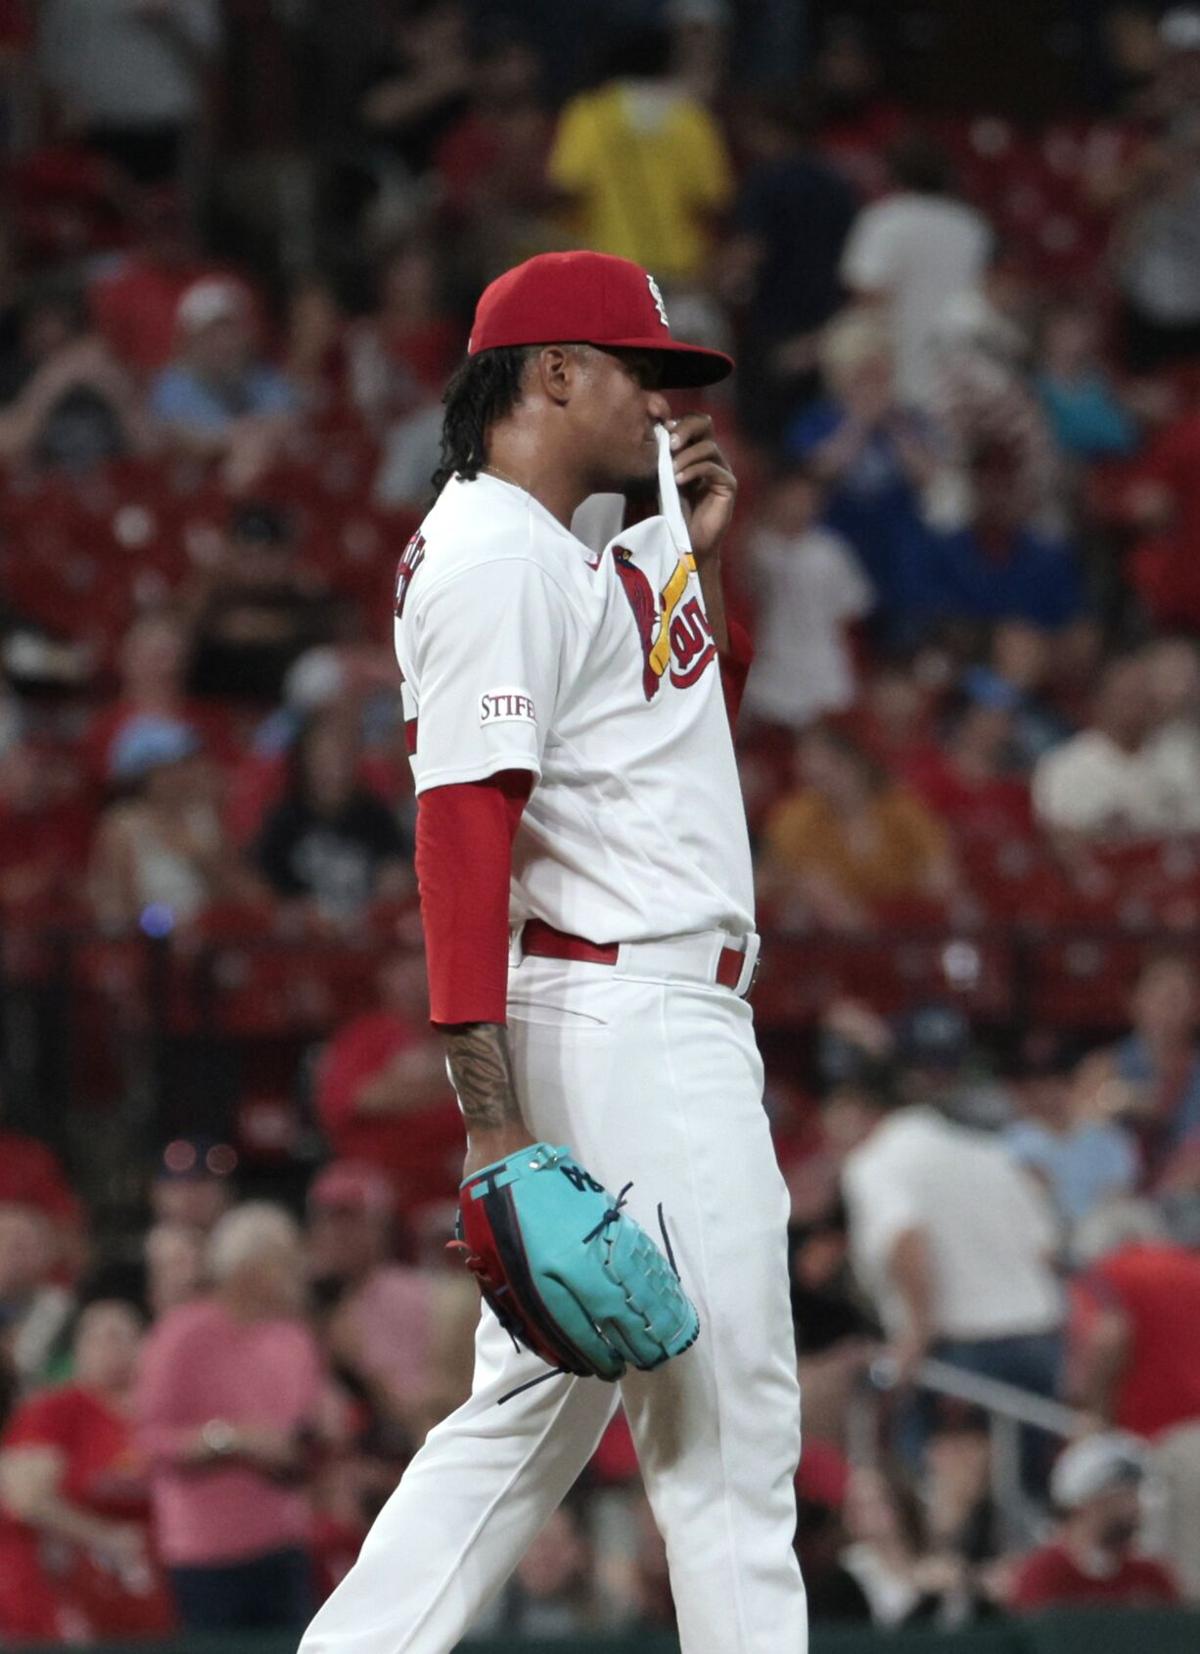 BenFred: Cardinals present Bader as a homegrown star, but can he lock down  center field?